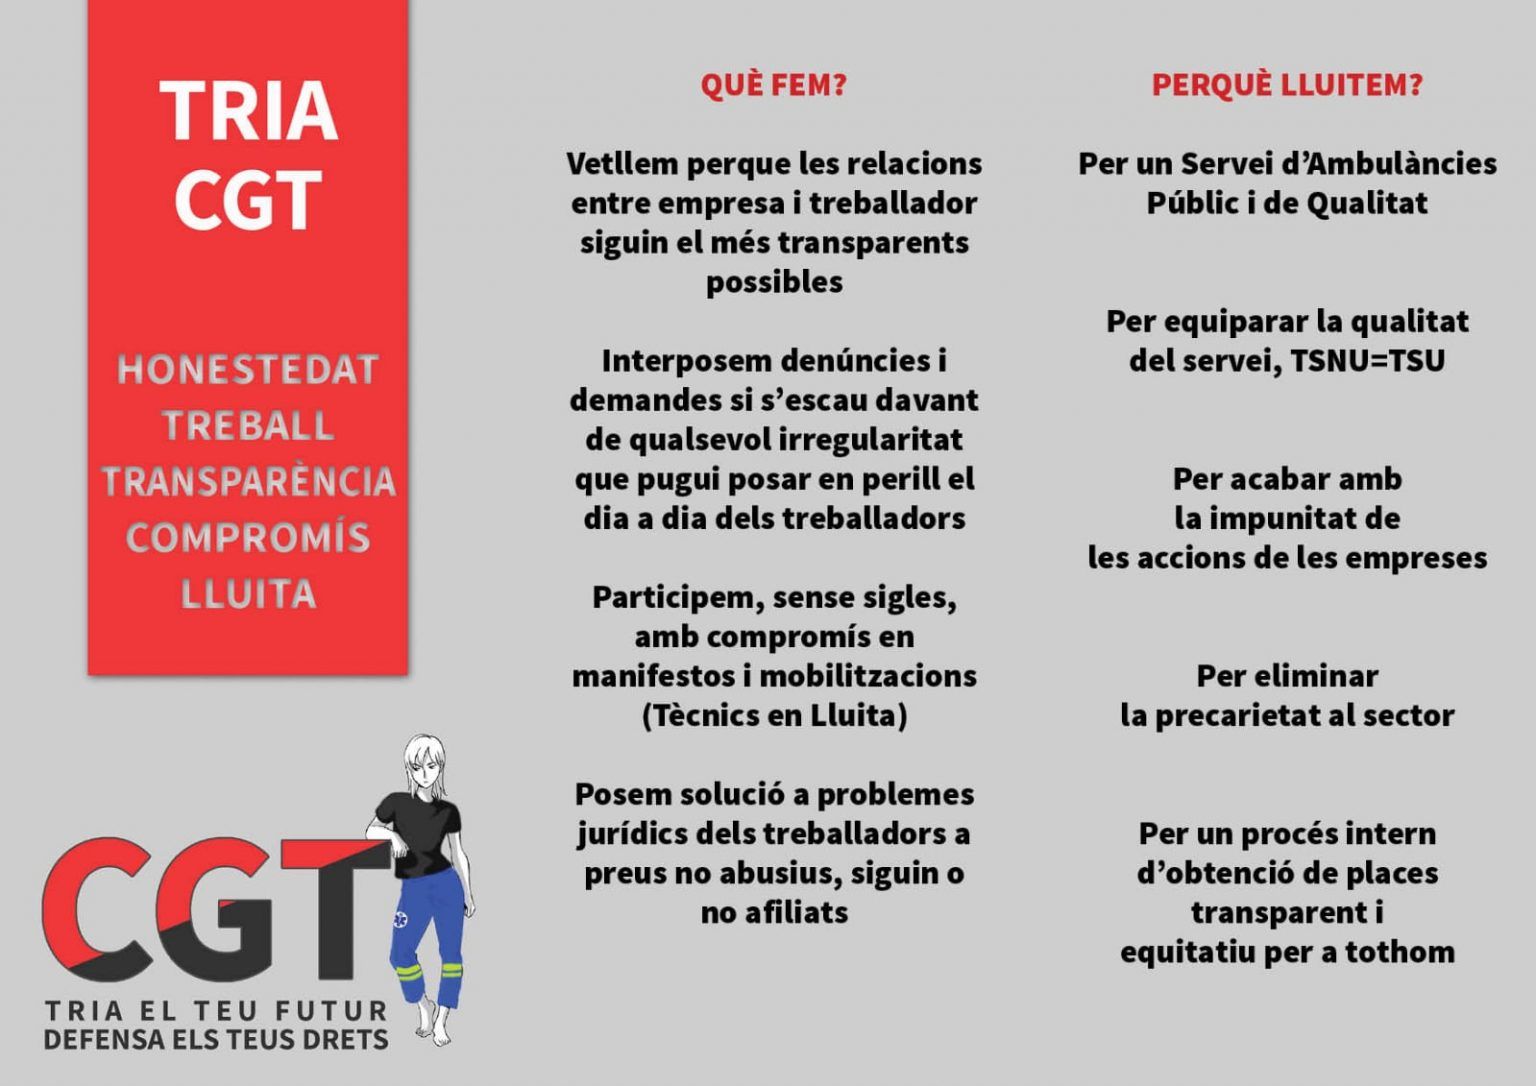 eleccions-egara-tarragona-cgt-01-1536x1086.jpg